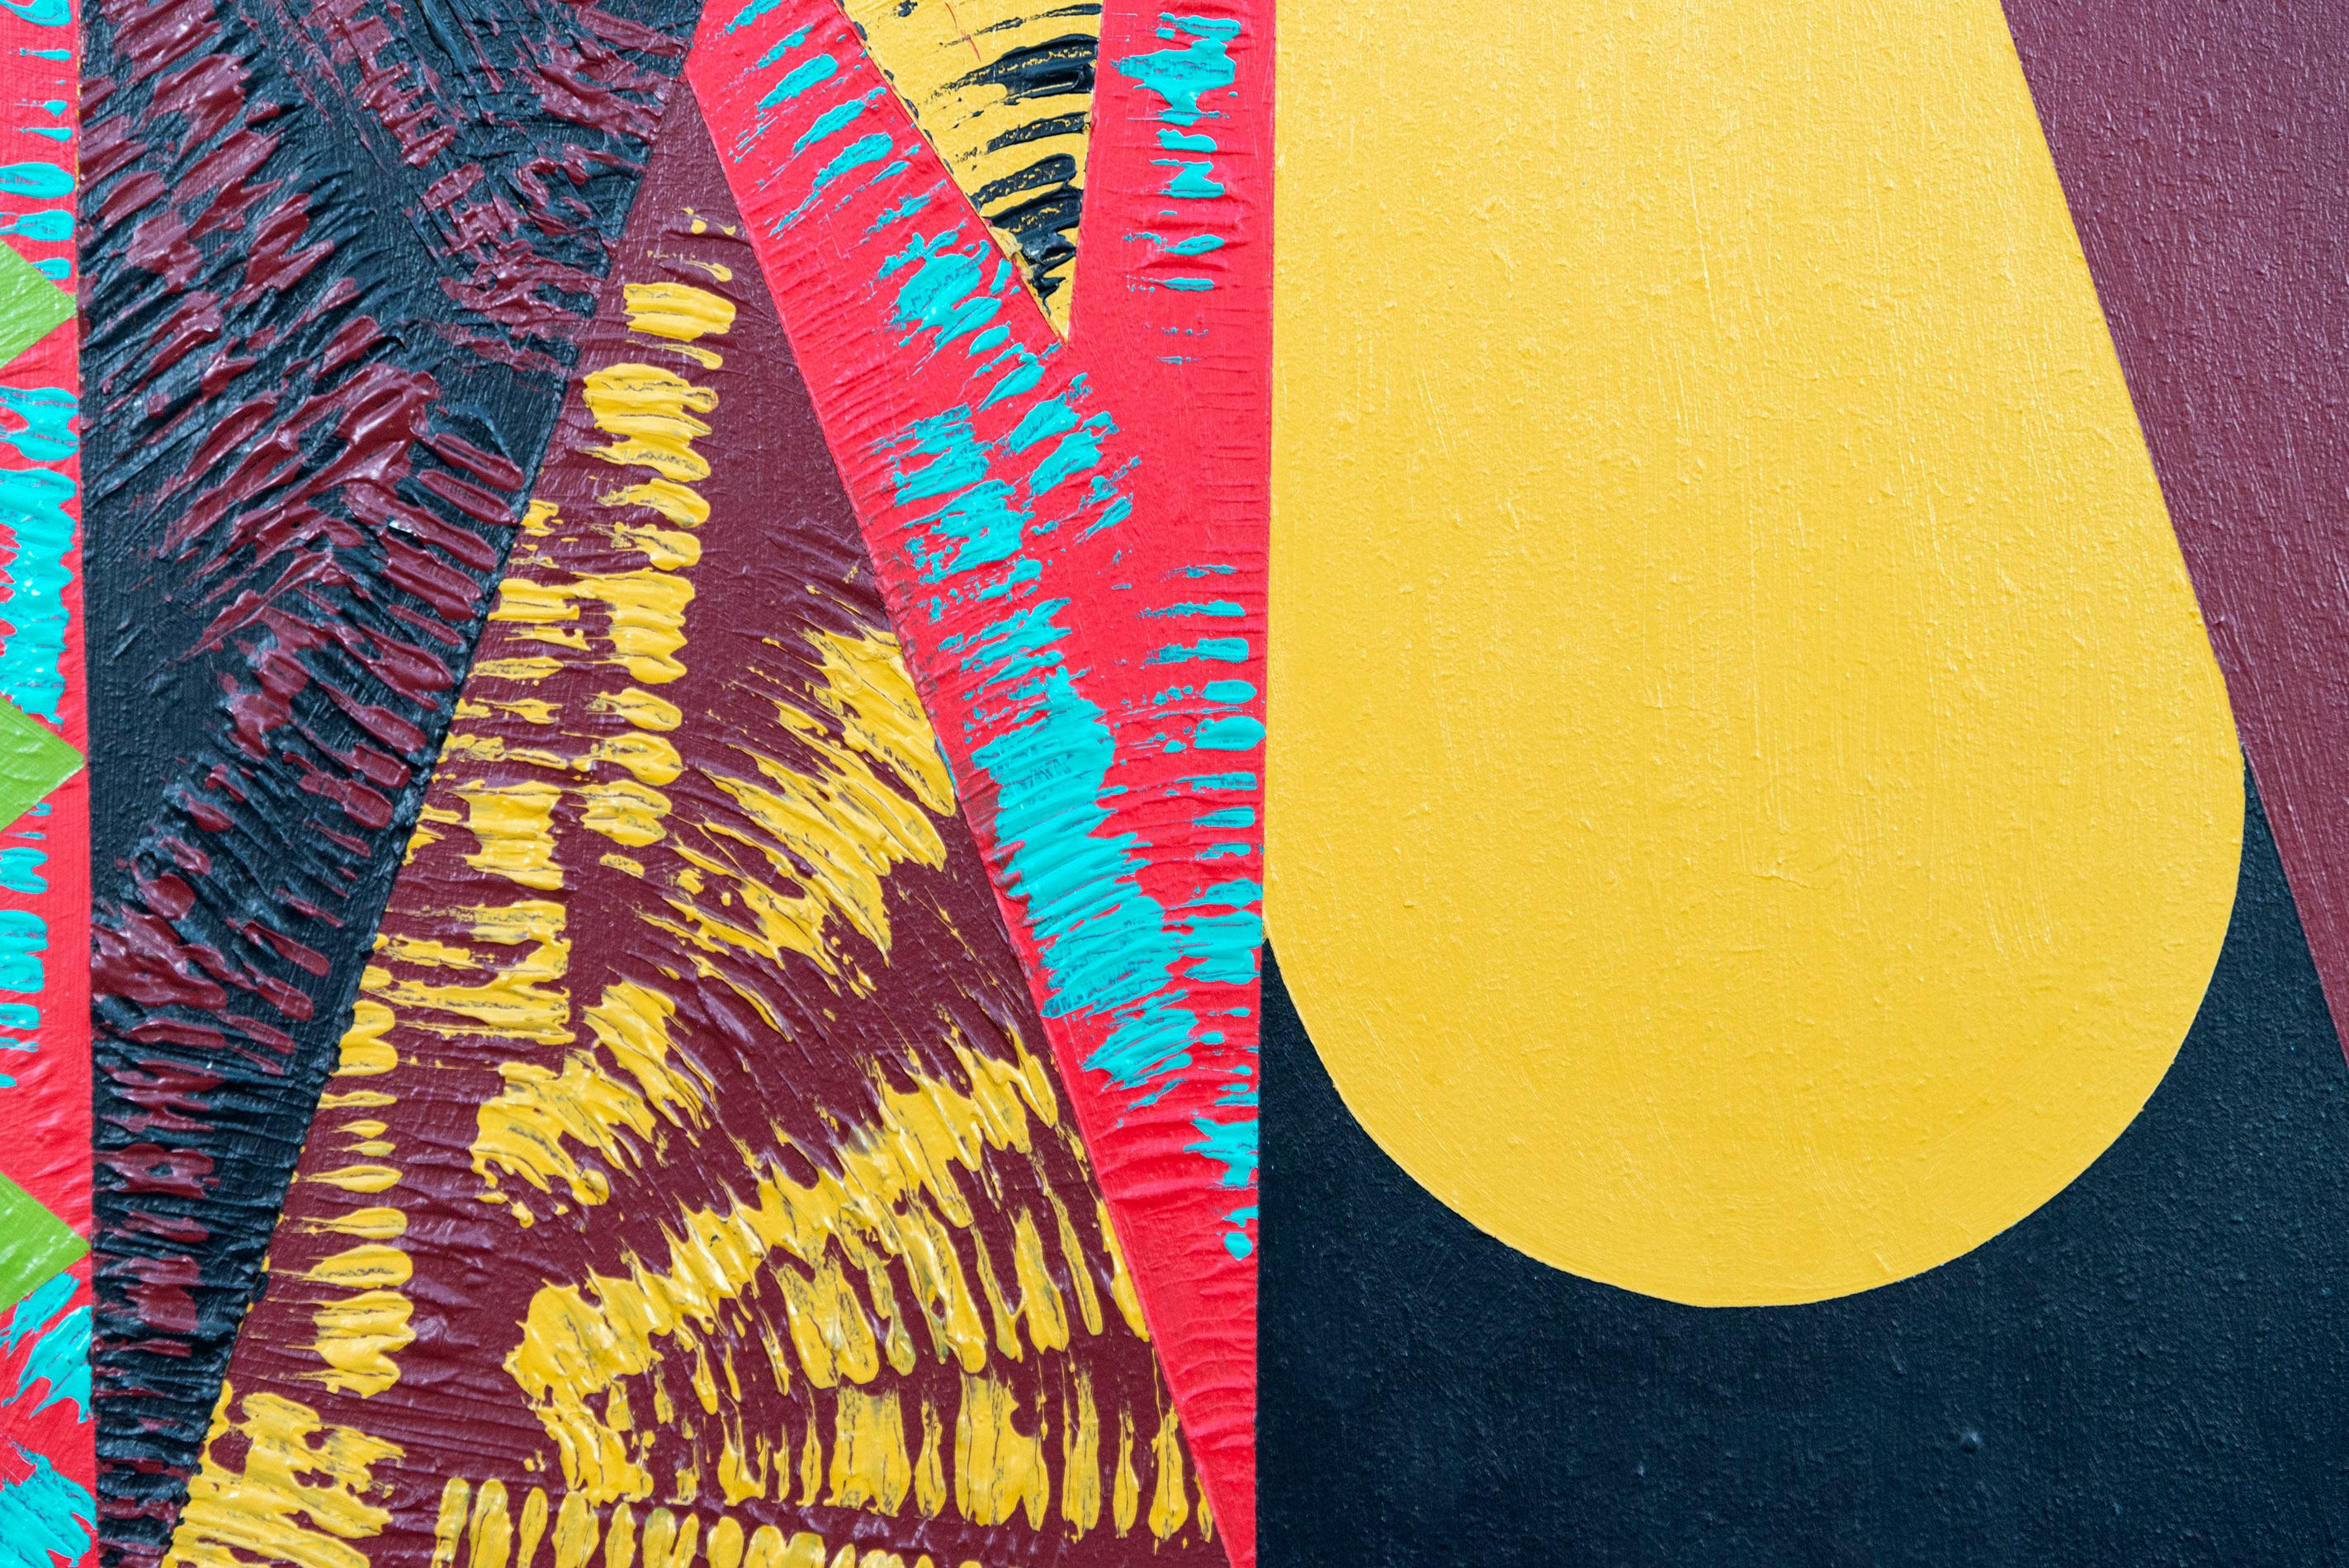 Mit seiner kühnen Form und der auffälligen schwarzen Palette setzt dieses große runde Gemälde von Yvonne Lammerich ein dramatisches zeitgenössisches Zeichen. Die tatsächliche Größe des Kreises hängt mit dem Körper der Künstlerin zusammen, die dieses